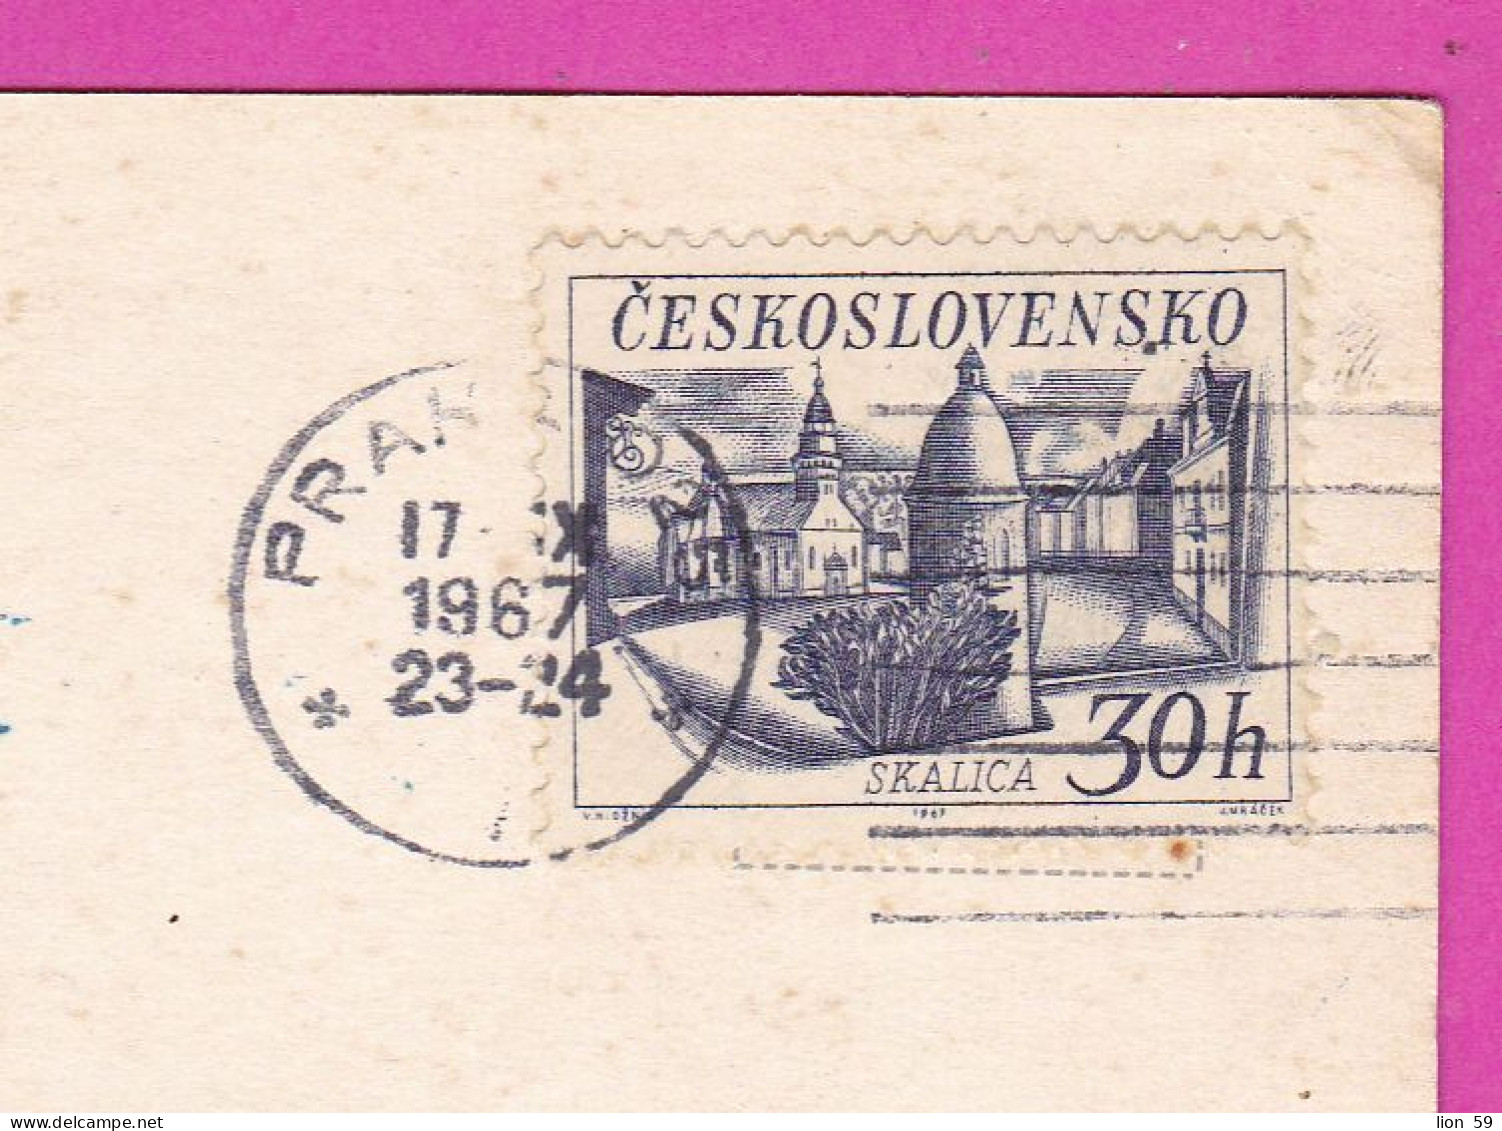 294822 / Czechoslovakia PRAHA Karluv Most Hradcany Prazske Mosty PC 1967 USED 30h Czech Towns - Skalica - Cartas & Documentos